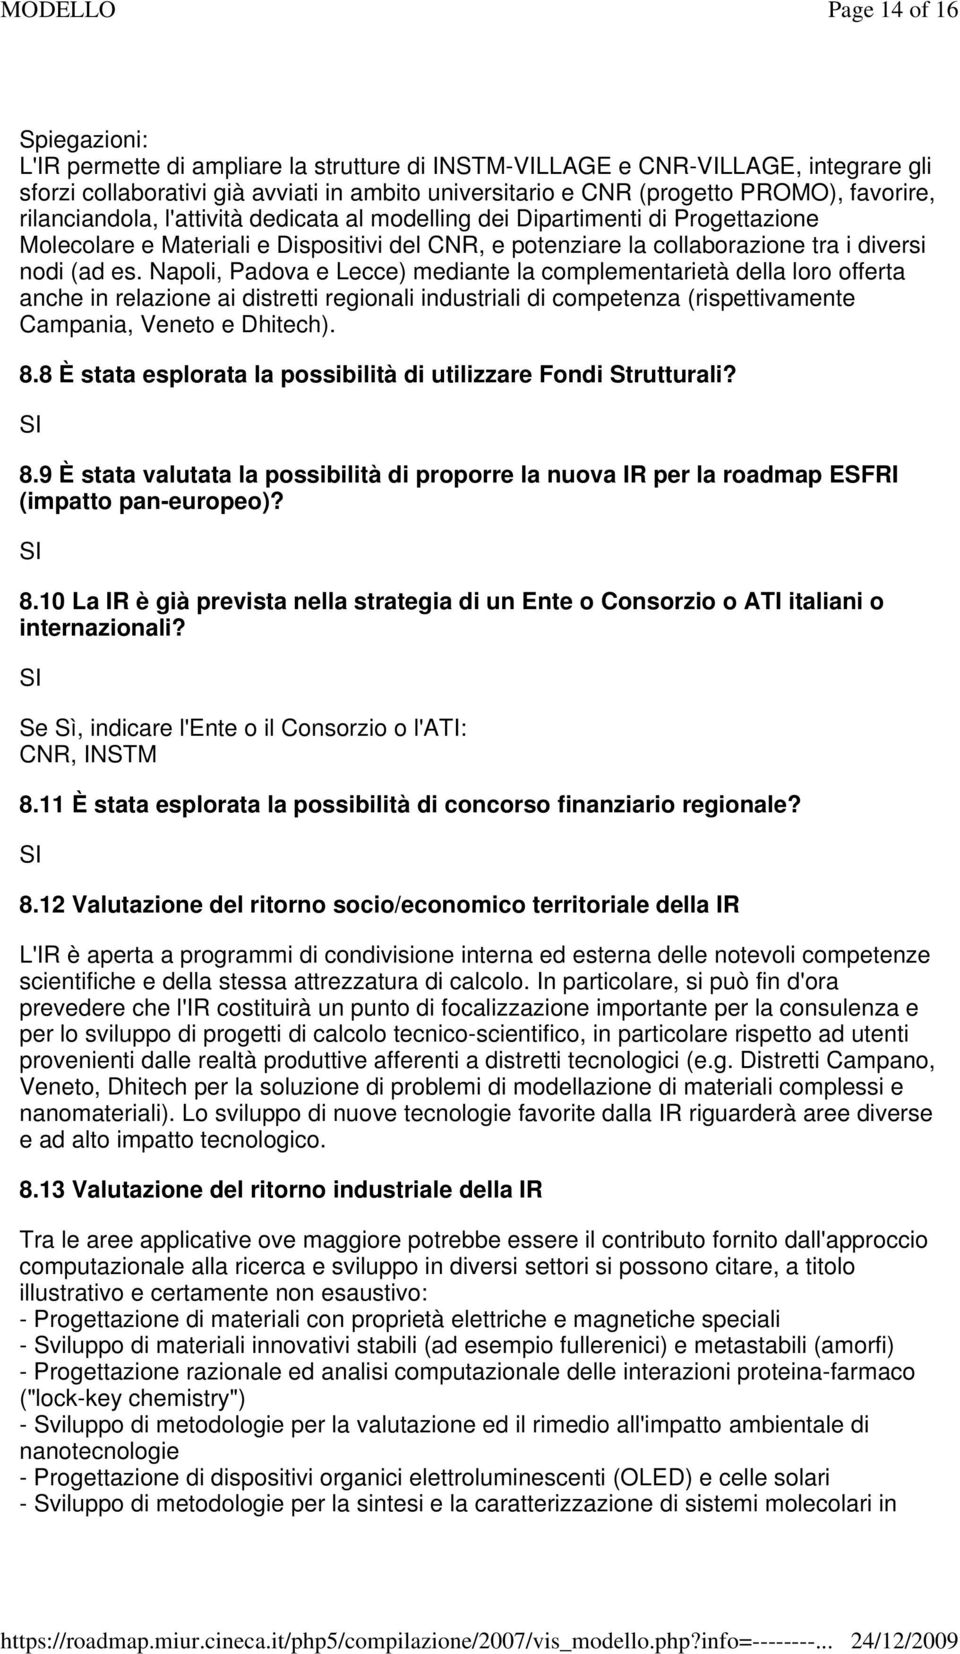 Napoli, Padova e Lecce) mediante la complementarietà della loro offerta anche in relazione ai distretti regionali industriali di competenza (rispettivamente Campania, Veneto e Dhitech). 8.